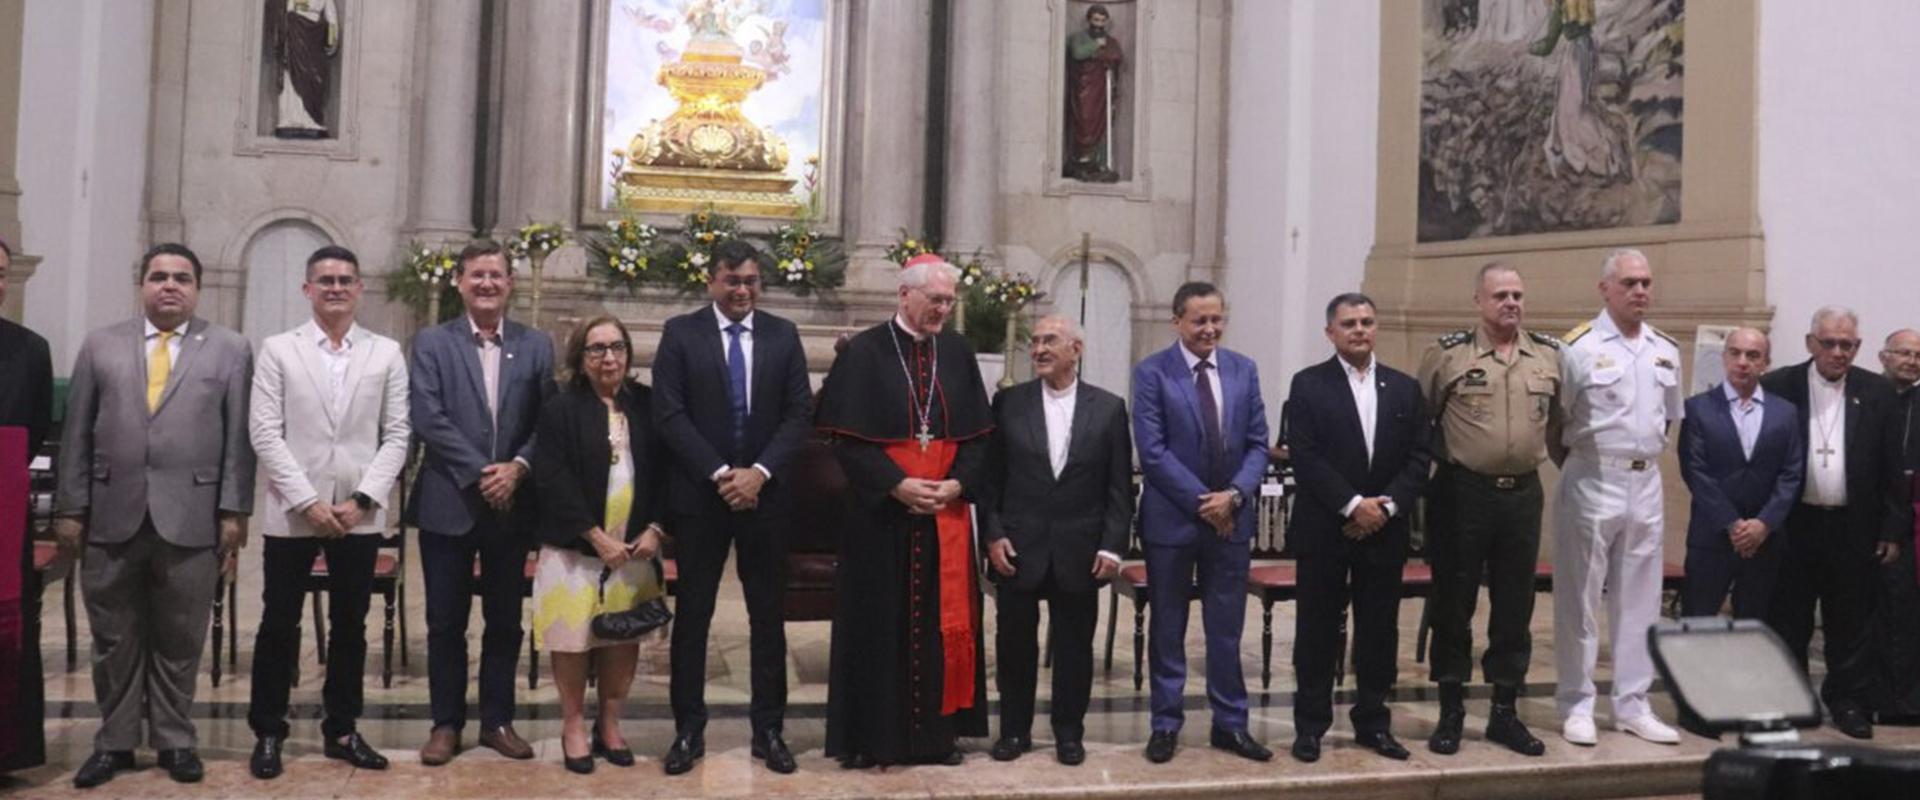 Arquidiocese de Manaus recebe Cardeal da Amazônia em evento na Catedral Metropolitana